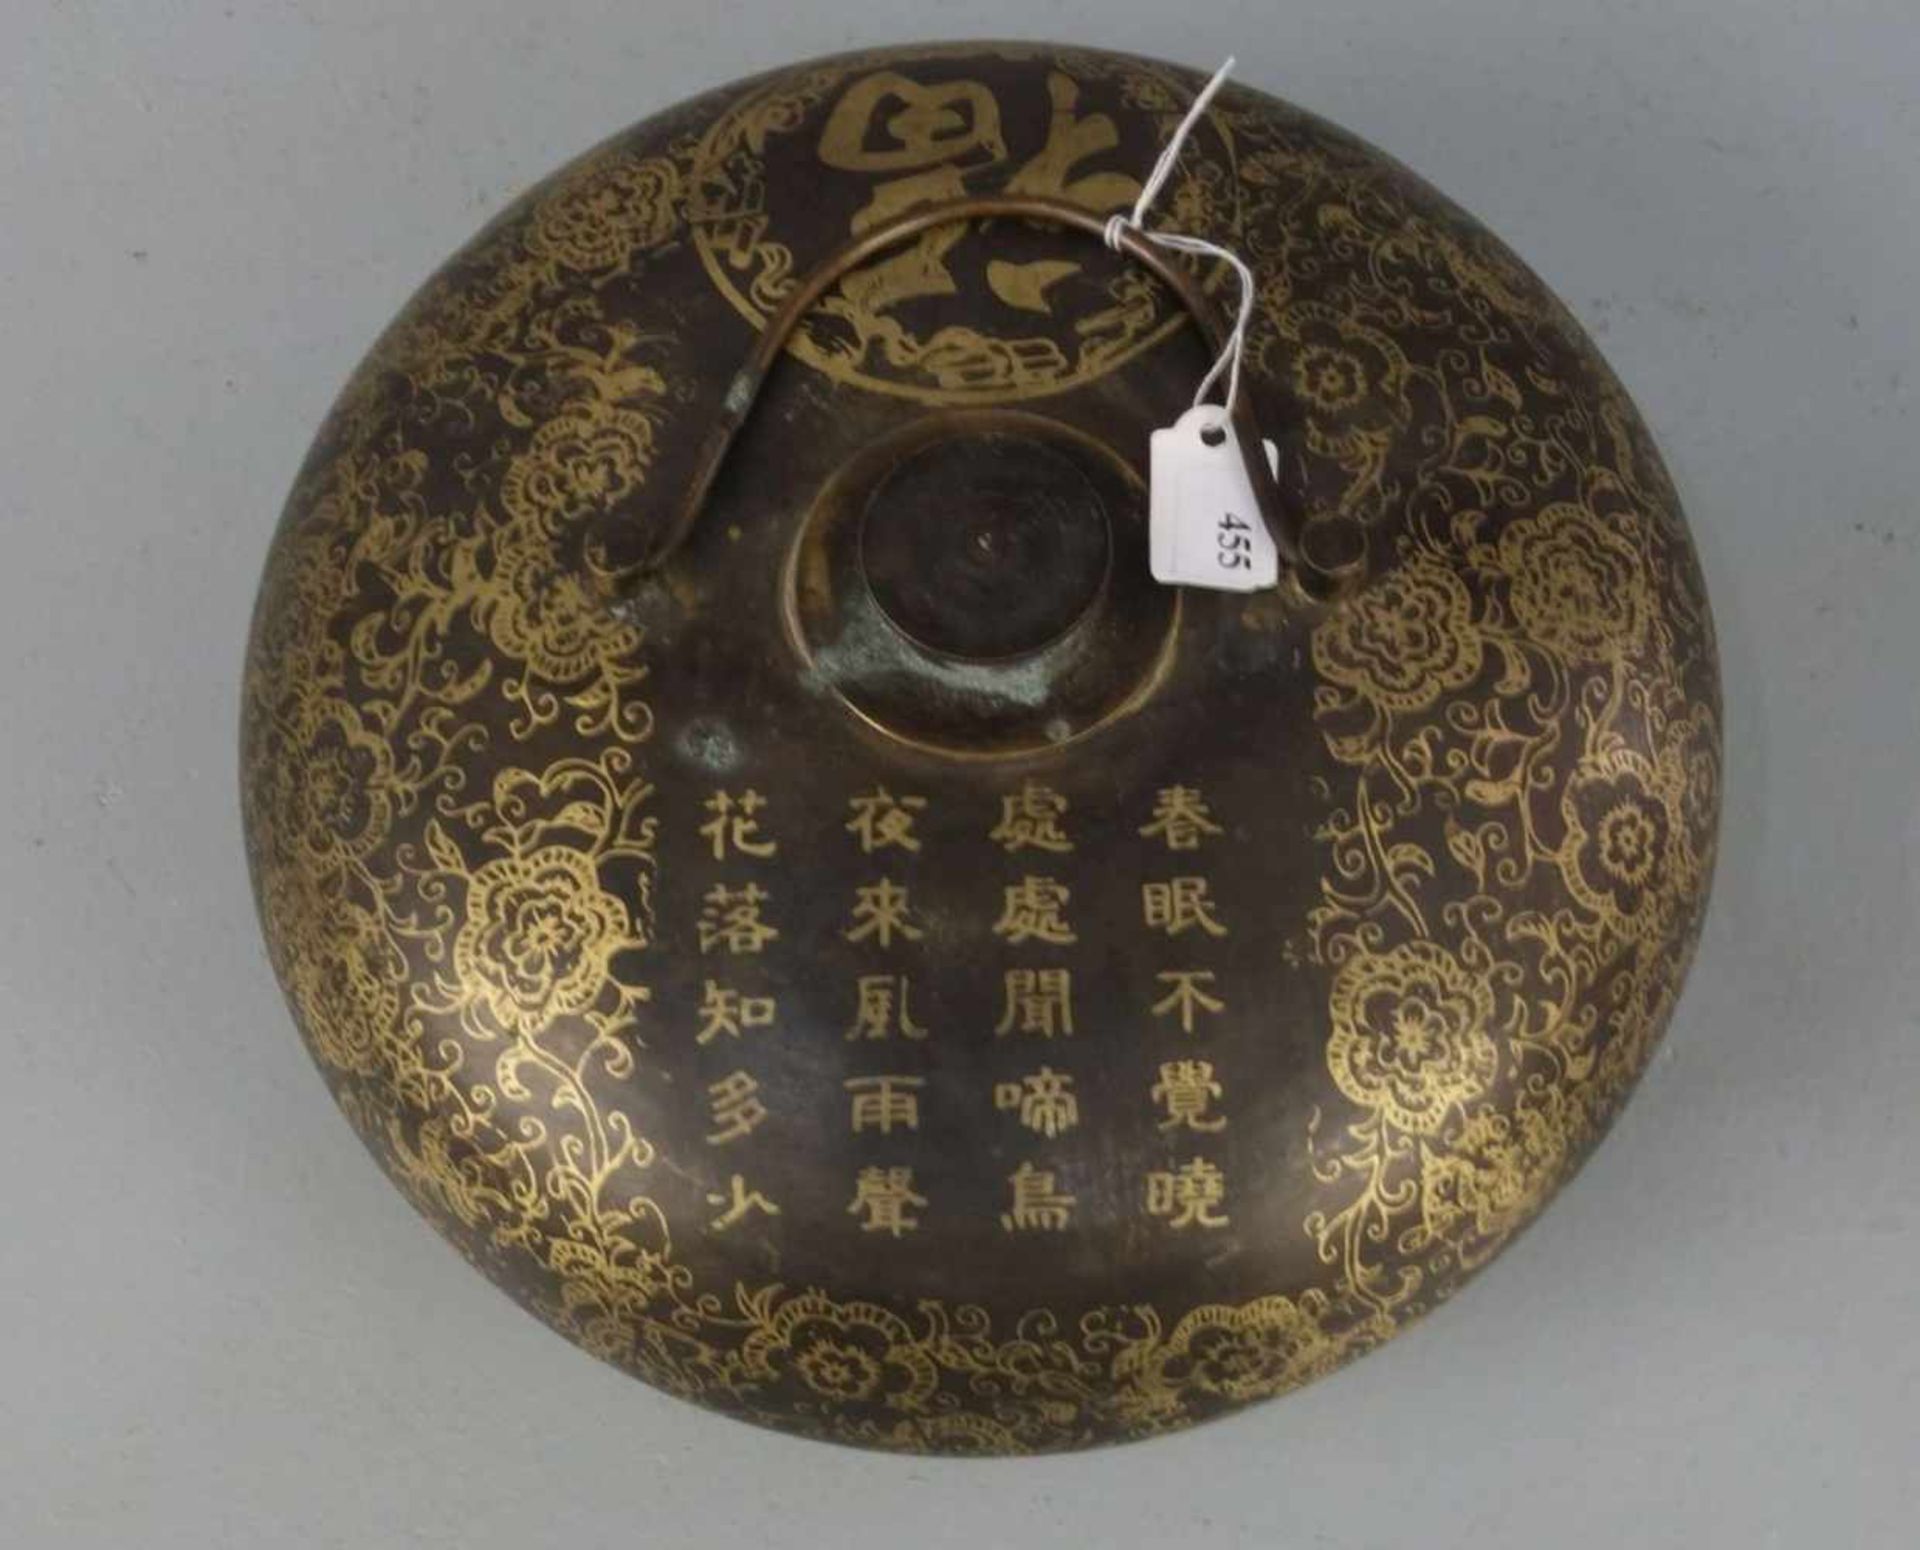 CHINESISCHE WÄRMFLASCHE / hot-water bottle, China, Anfang 20. Jh., Bronze braun patiniert und in - Bild 3 aus 4